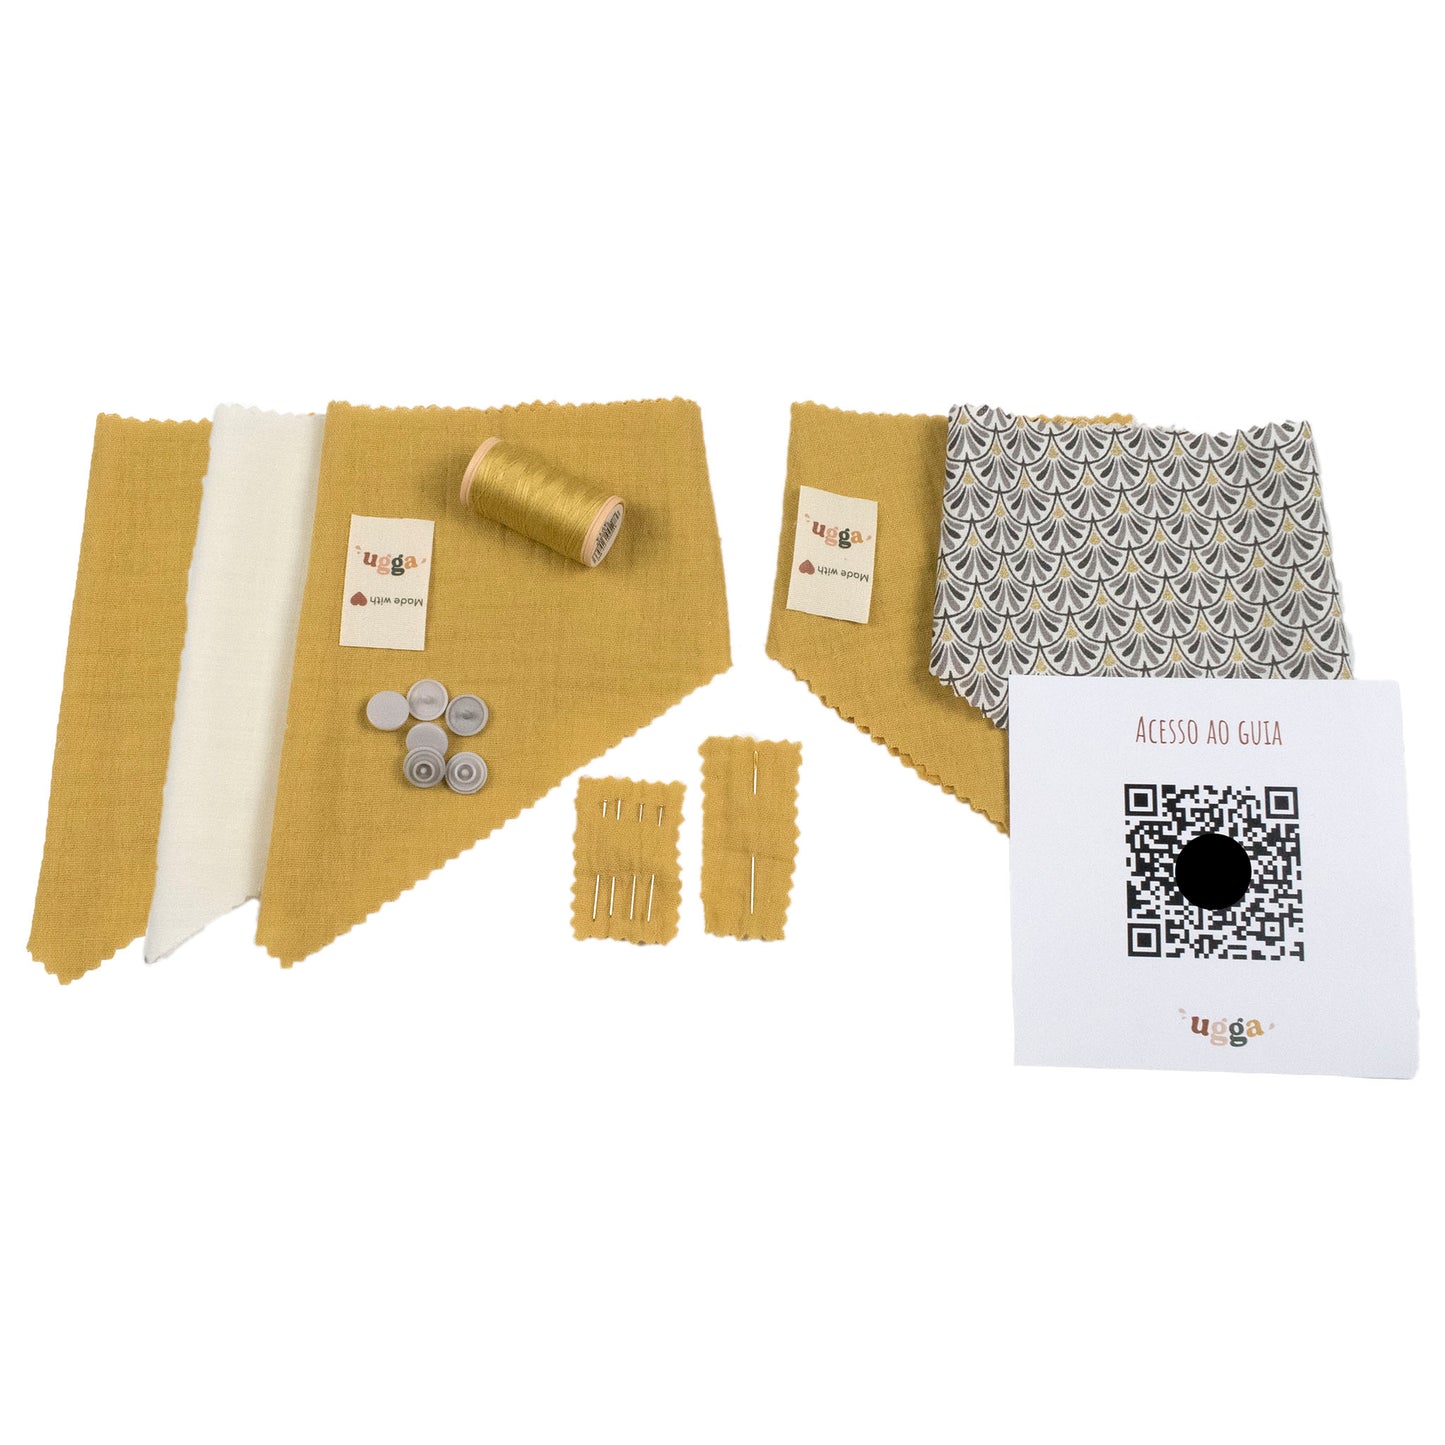 DIY Sewing Kit - Set of bandanas